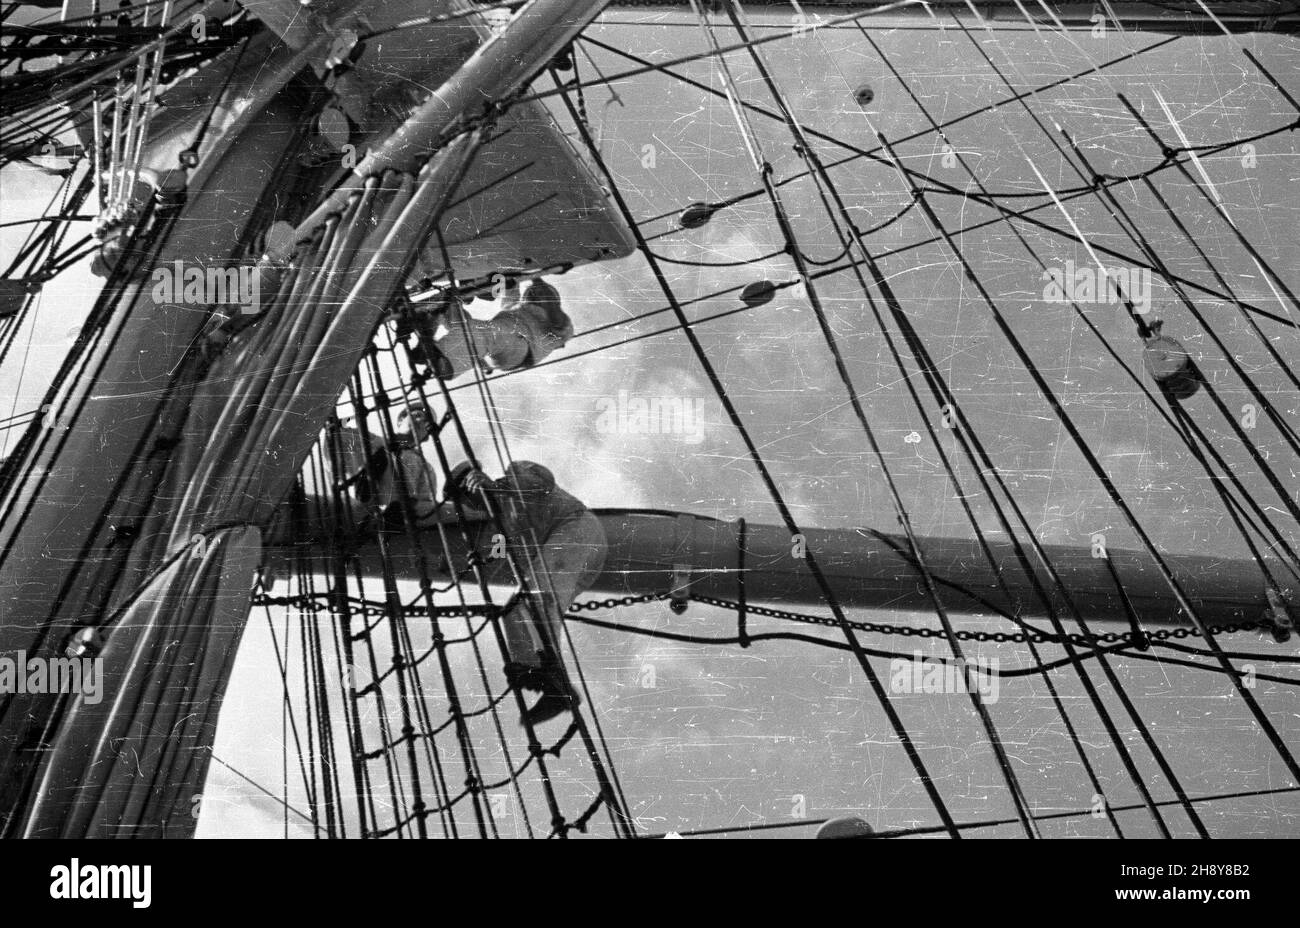 Gdynia, 1946-07-16. Przygotowania na statku szkoleniowym polskiej marynarki handlowej Dar Pomorza, przed jego pierwszym powojennym rejsem do Marsylii we Francji. Nz. marynarze wspinaj¹cy siê po rejach. ps/ms  PAP/Miko³aj Sprudin      Gdynia, July 16, 1946. Preparations aboard Dar Pomorza Polish Merchant Navy training ship for its first post-war trip to Marseille, France. Pictured: sailors climb the yards.  ps/ms  PAP/Mikolaj Sprudin Stock Photo